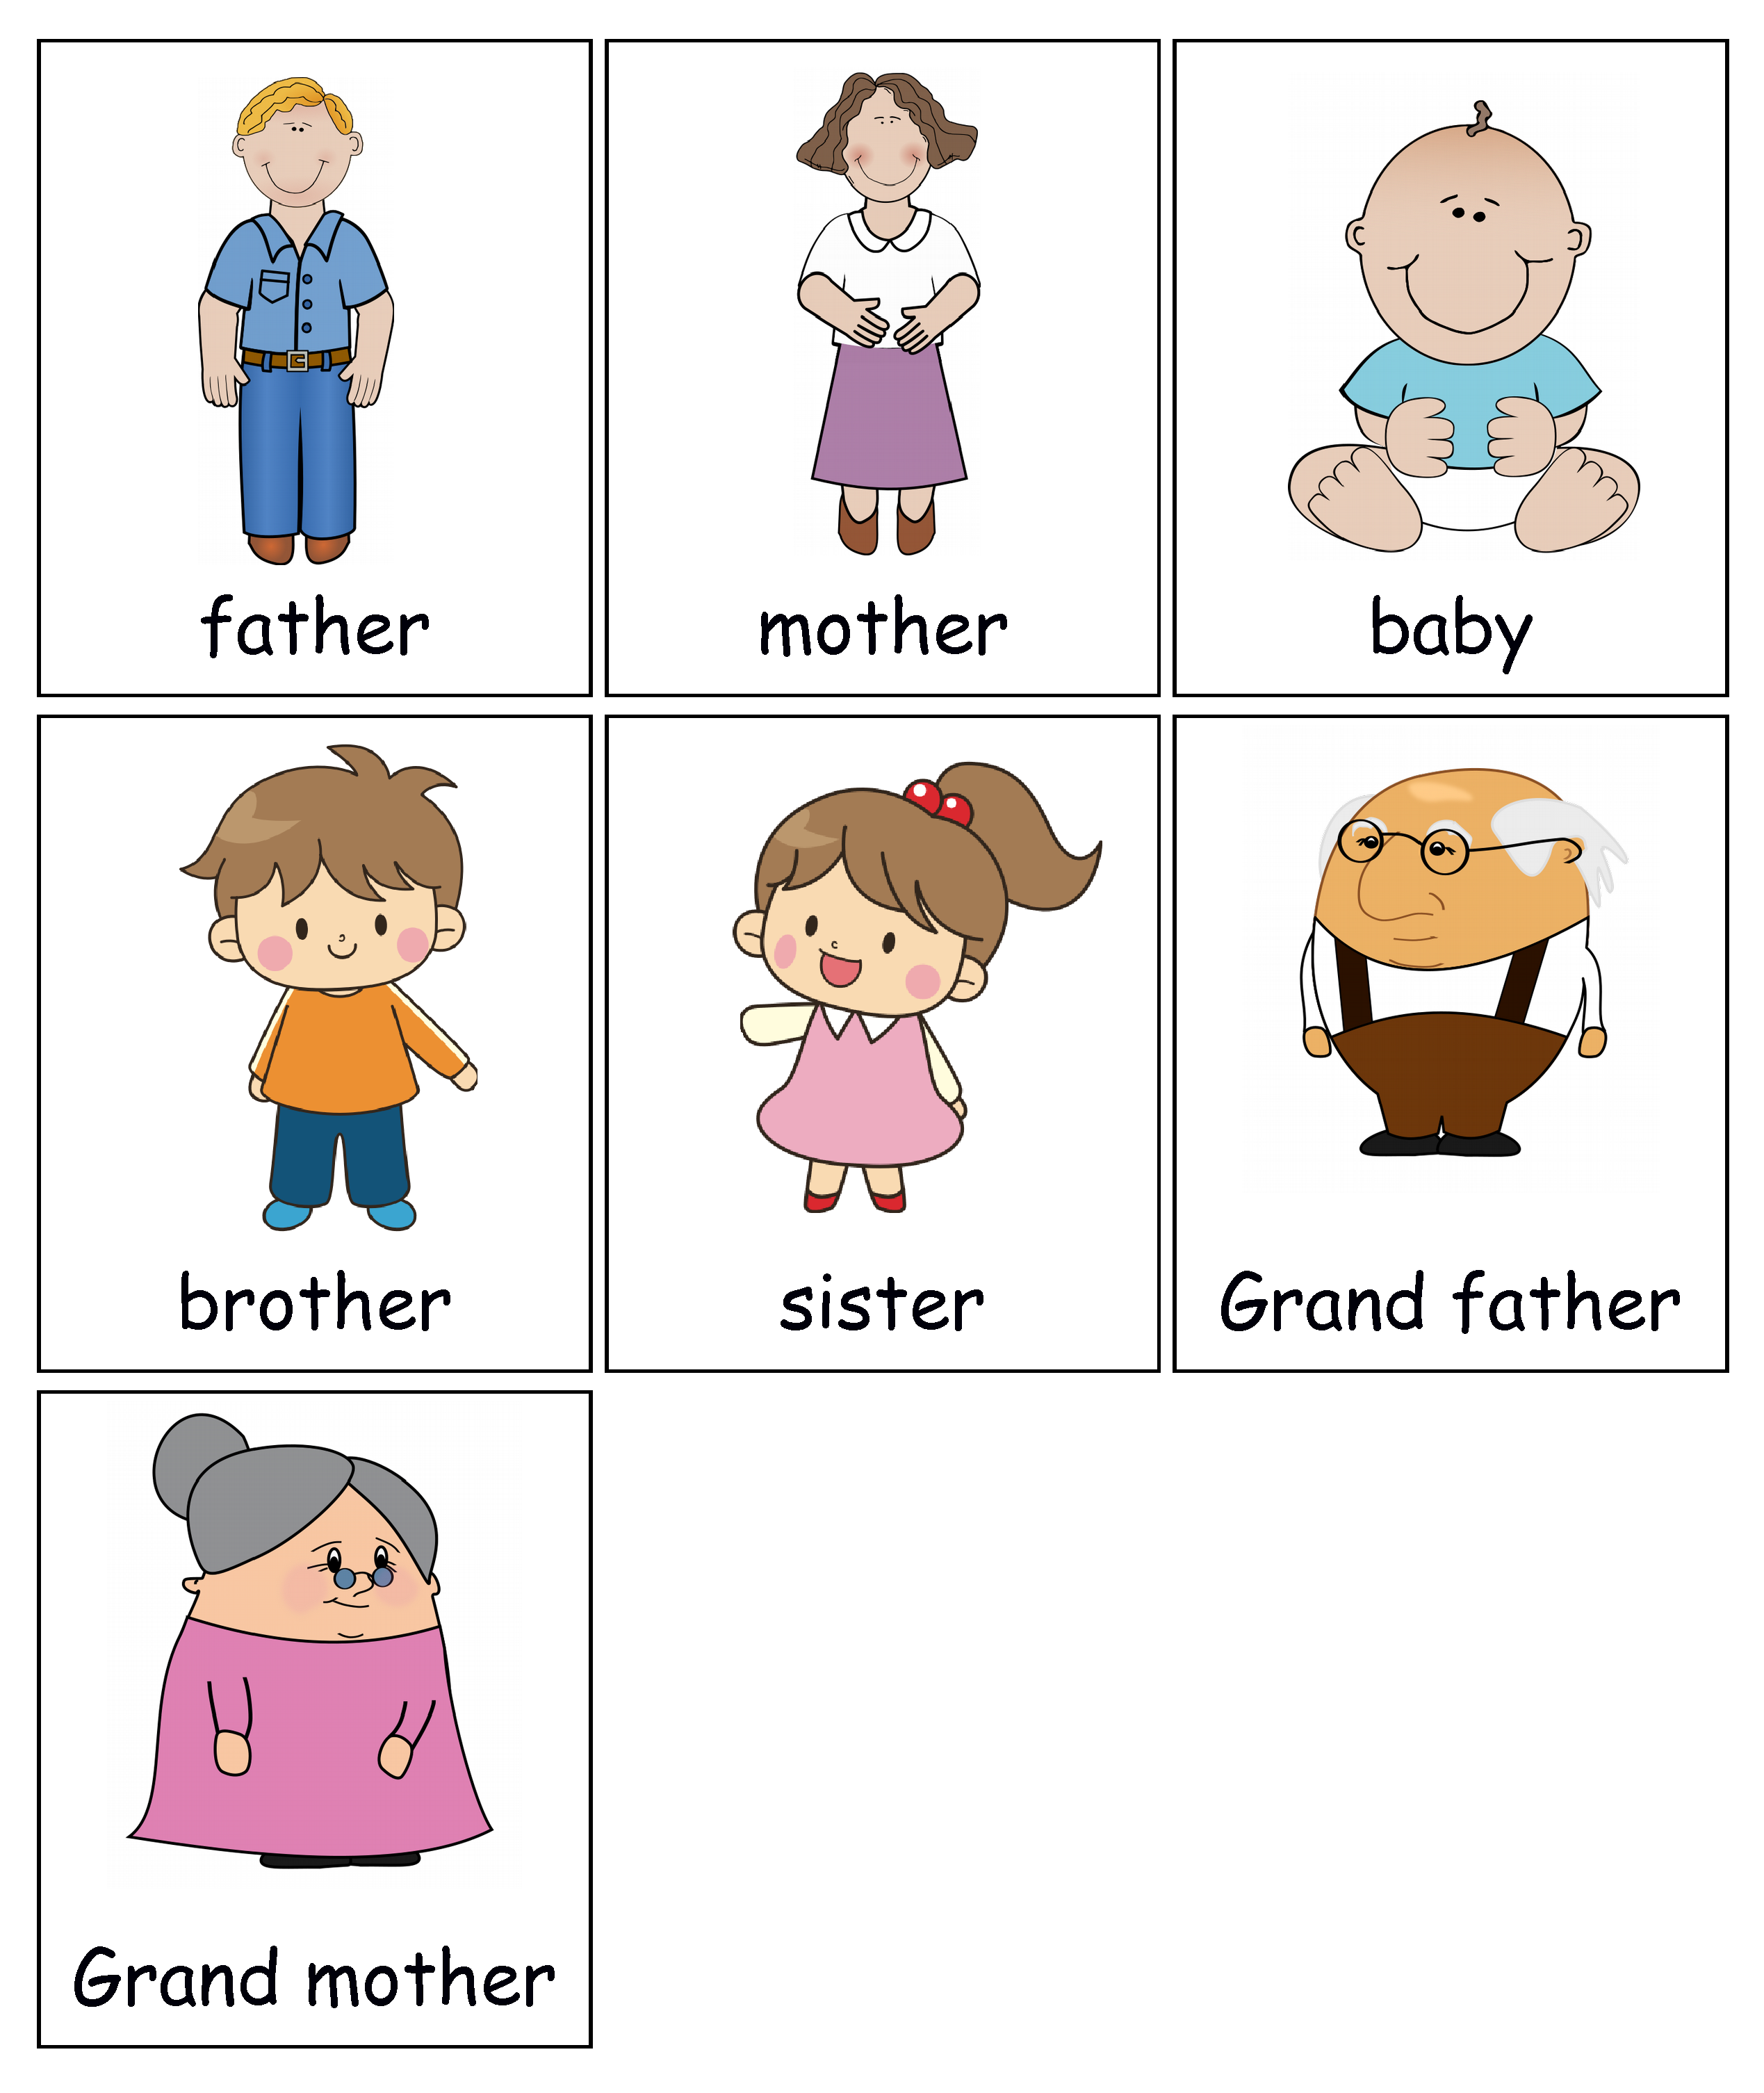 Family words vocabulary. Семья карточки на английском для детей.